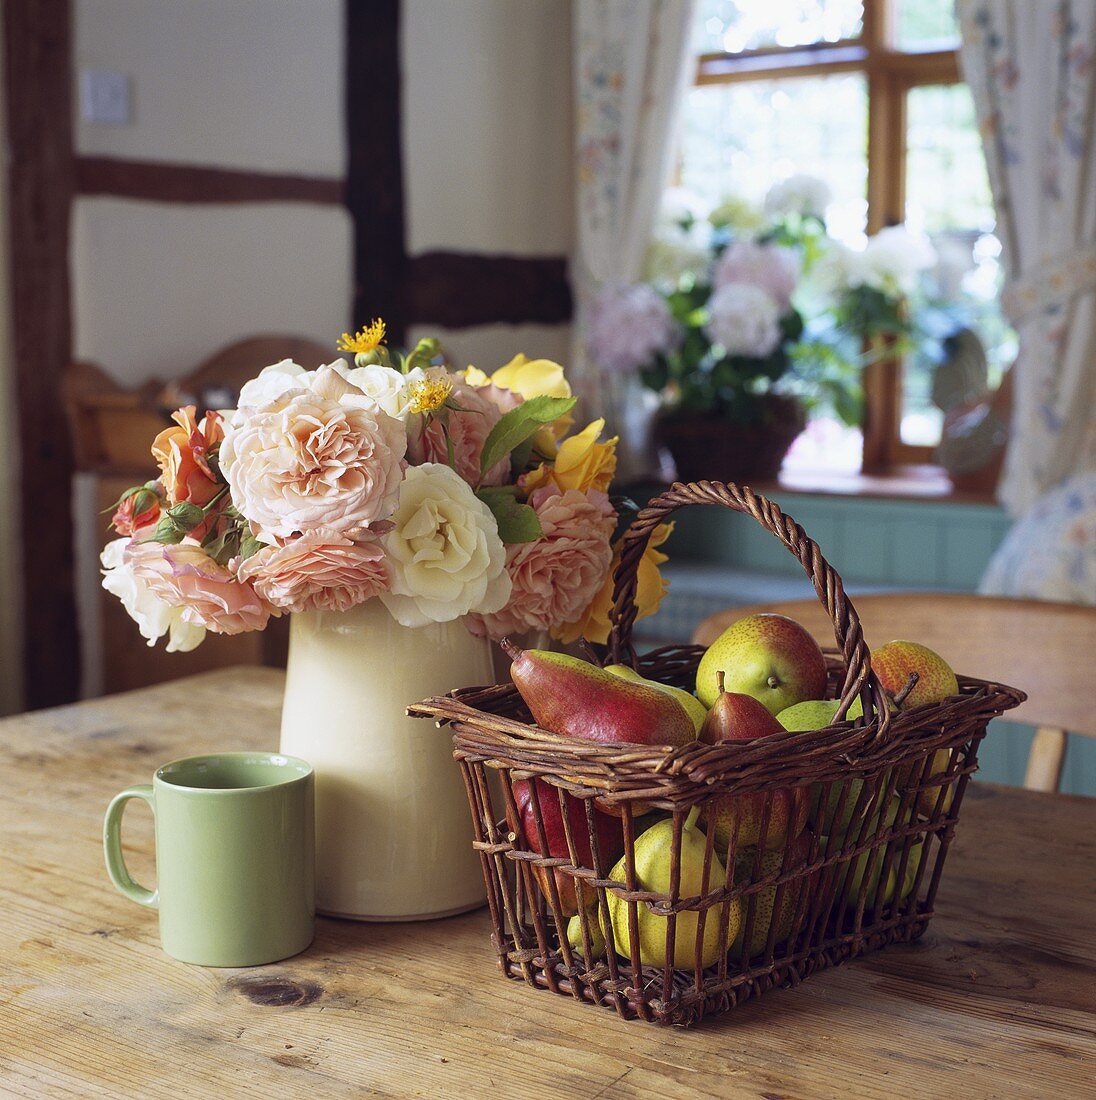 Korb mit Birnen und Rosenstrauss im Krug neben grüner Tasse auf Holztisch